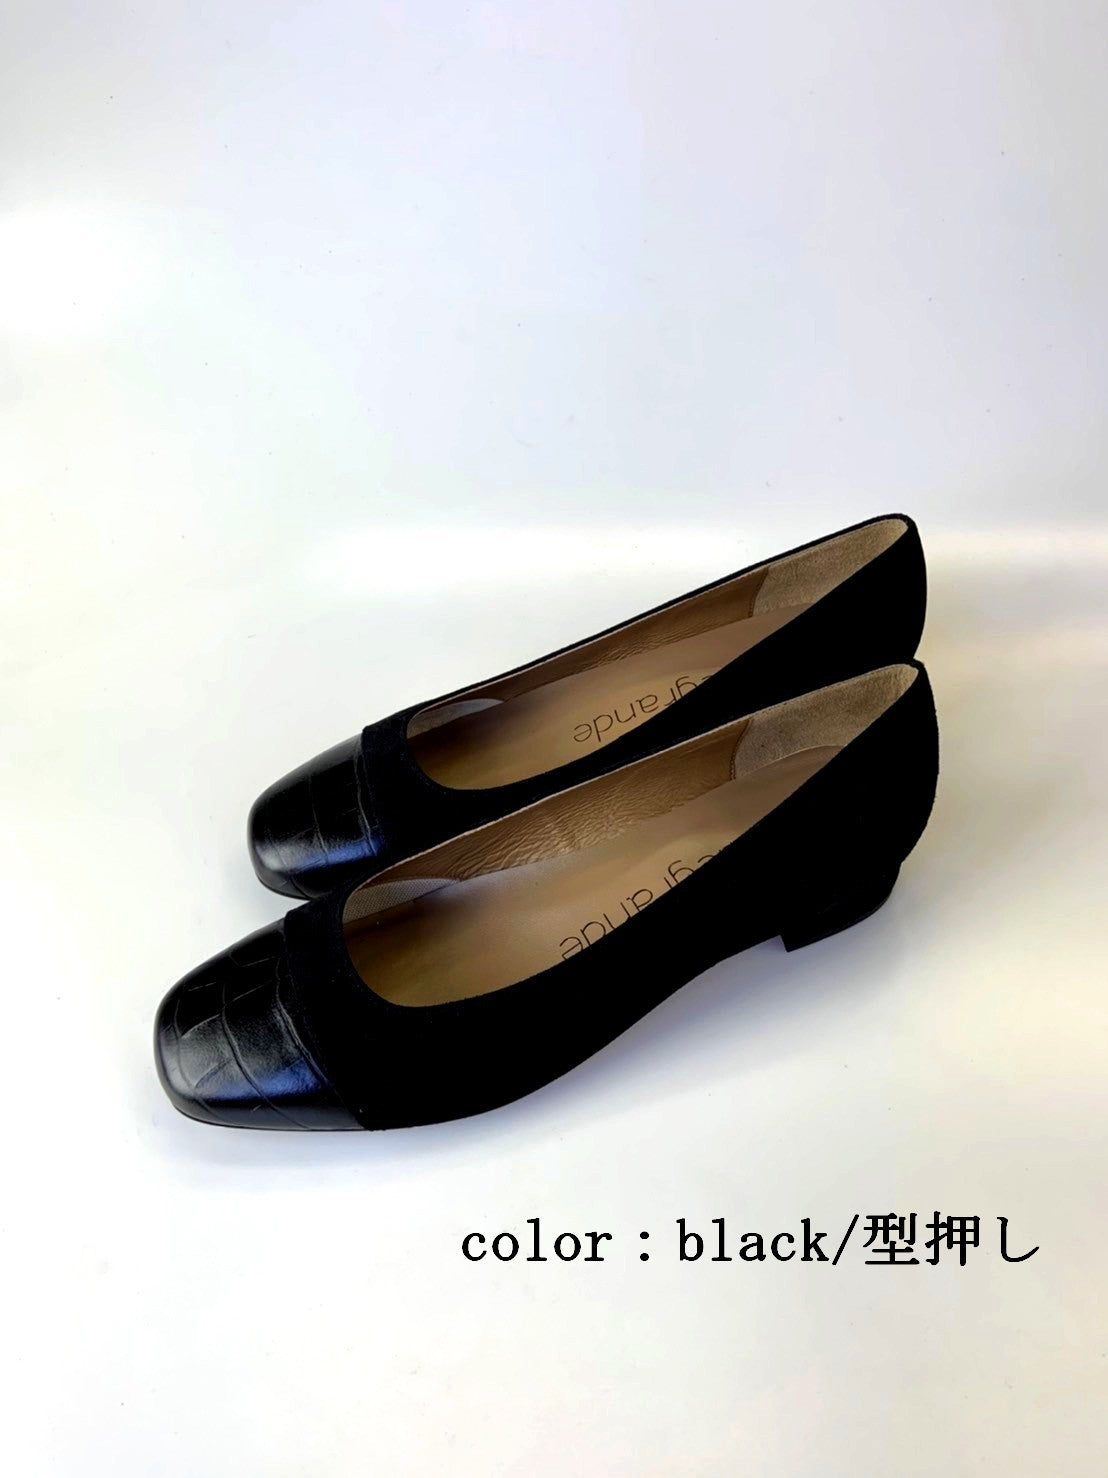 sample9011 トゥキャップパンプス | 大きめサイズの靴専門店 grandegrande